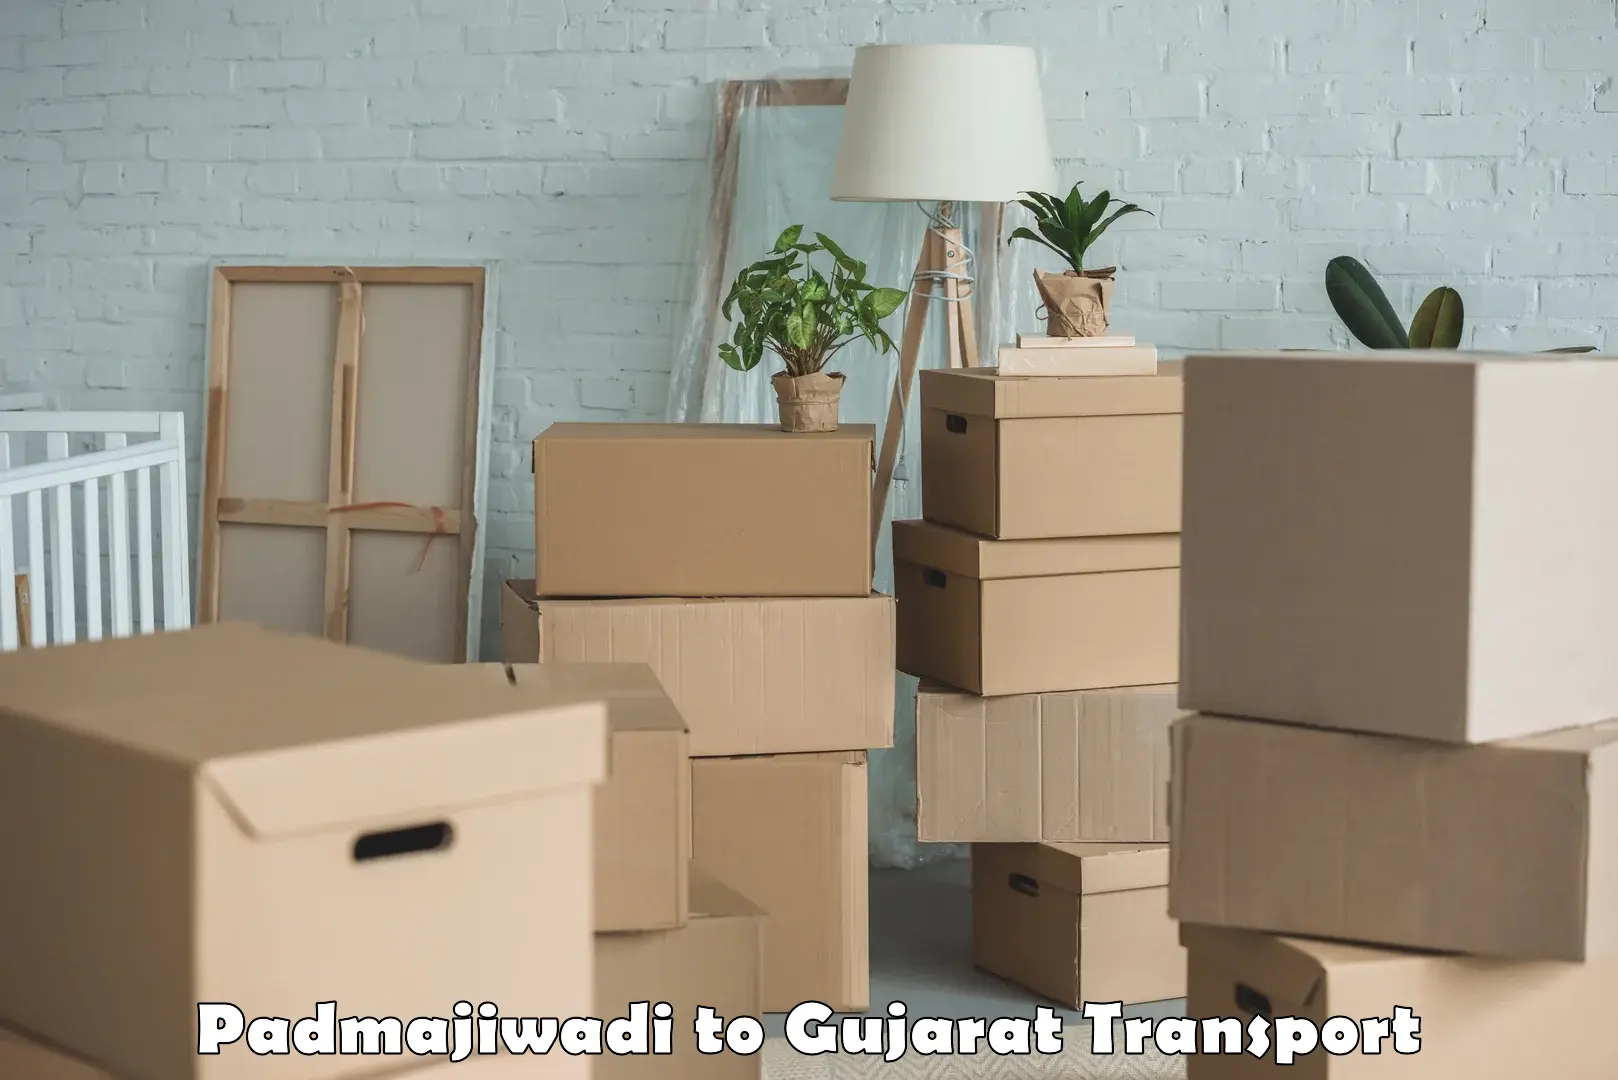 Furniture transport service Padmajiwadi to Ahmedabad